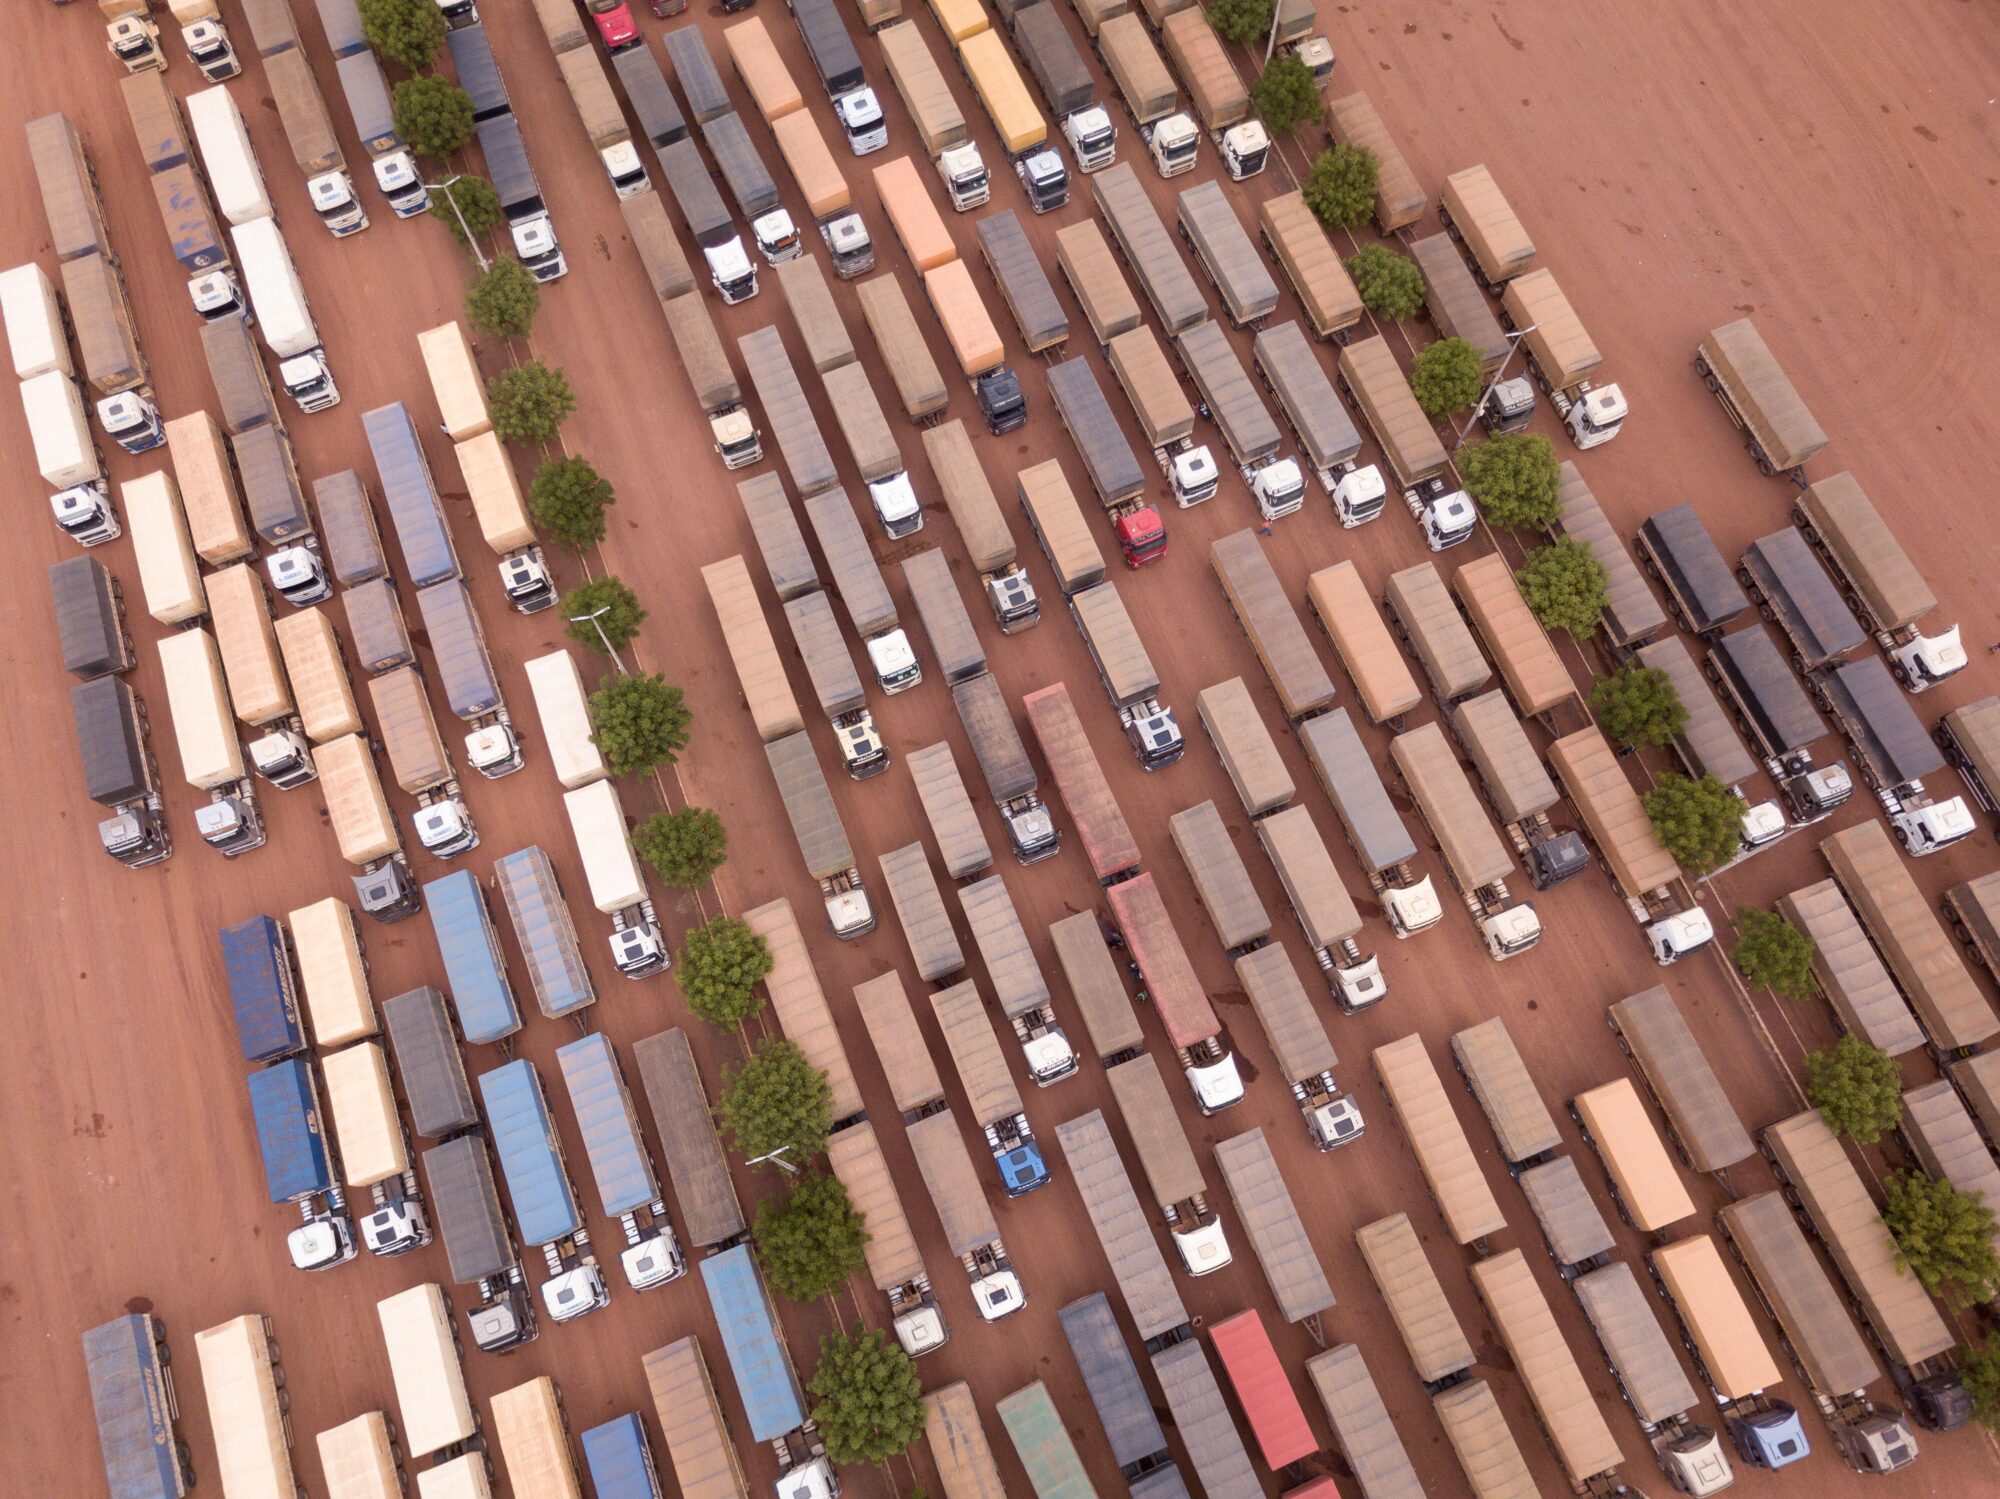 <p>Fila de caminhões carregados de soja na BR-163 no Pará, Brasil. Amazônia importa à China por comércio agrícola e papel no controle do aquecimento global (Imagem: Paralaxis / Alamy)</p>